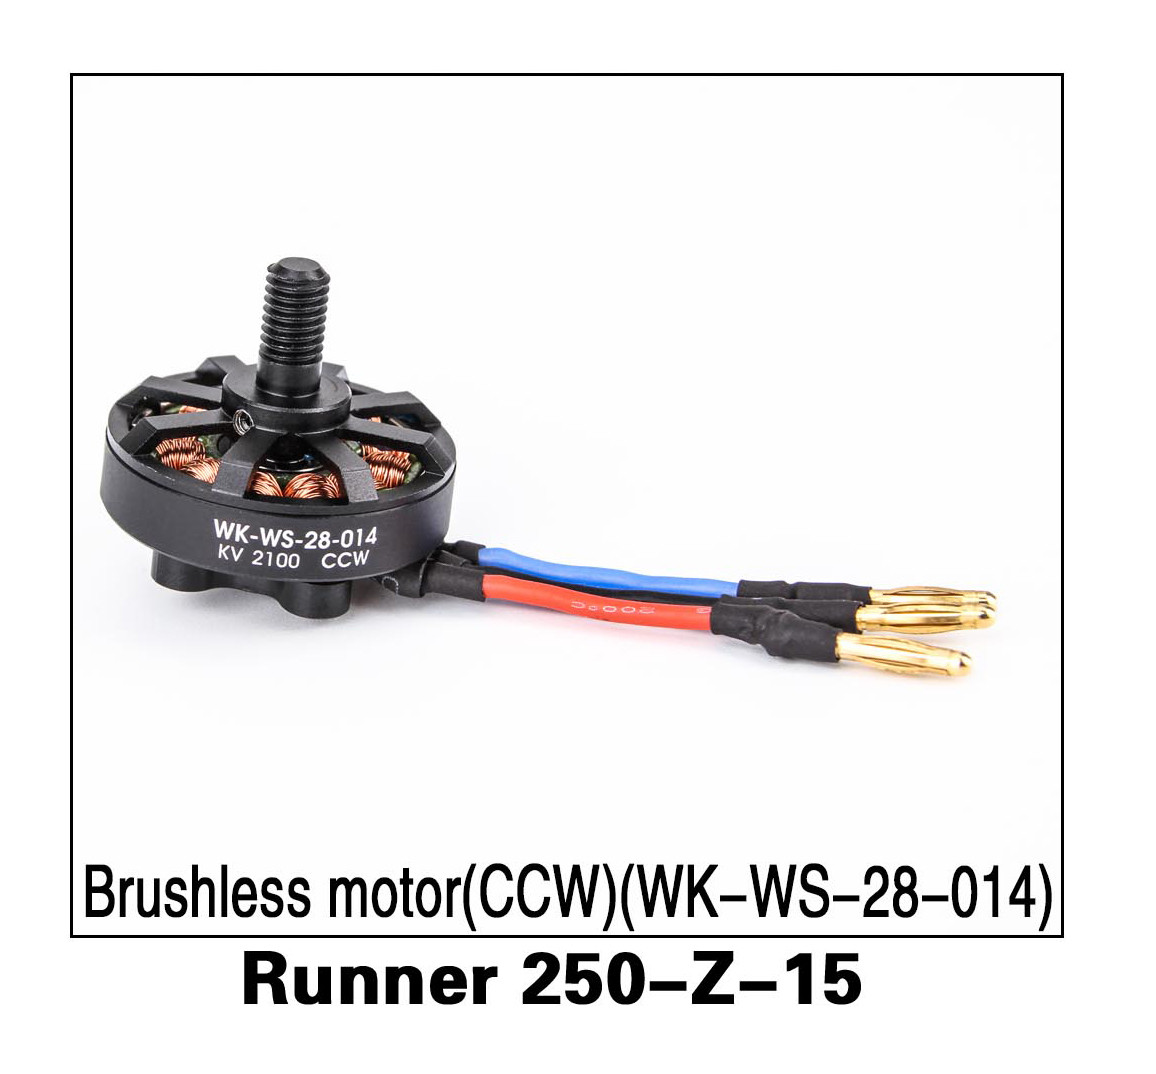 Walkera Runner 250 Brushless Motor CCW Runner 250-Z-15 (WK-WS-28-014)